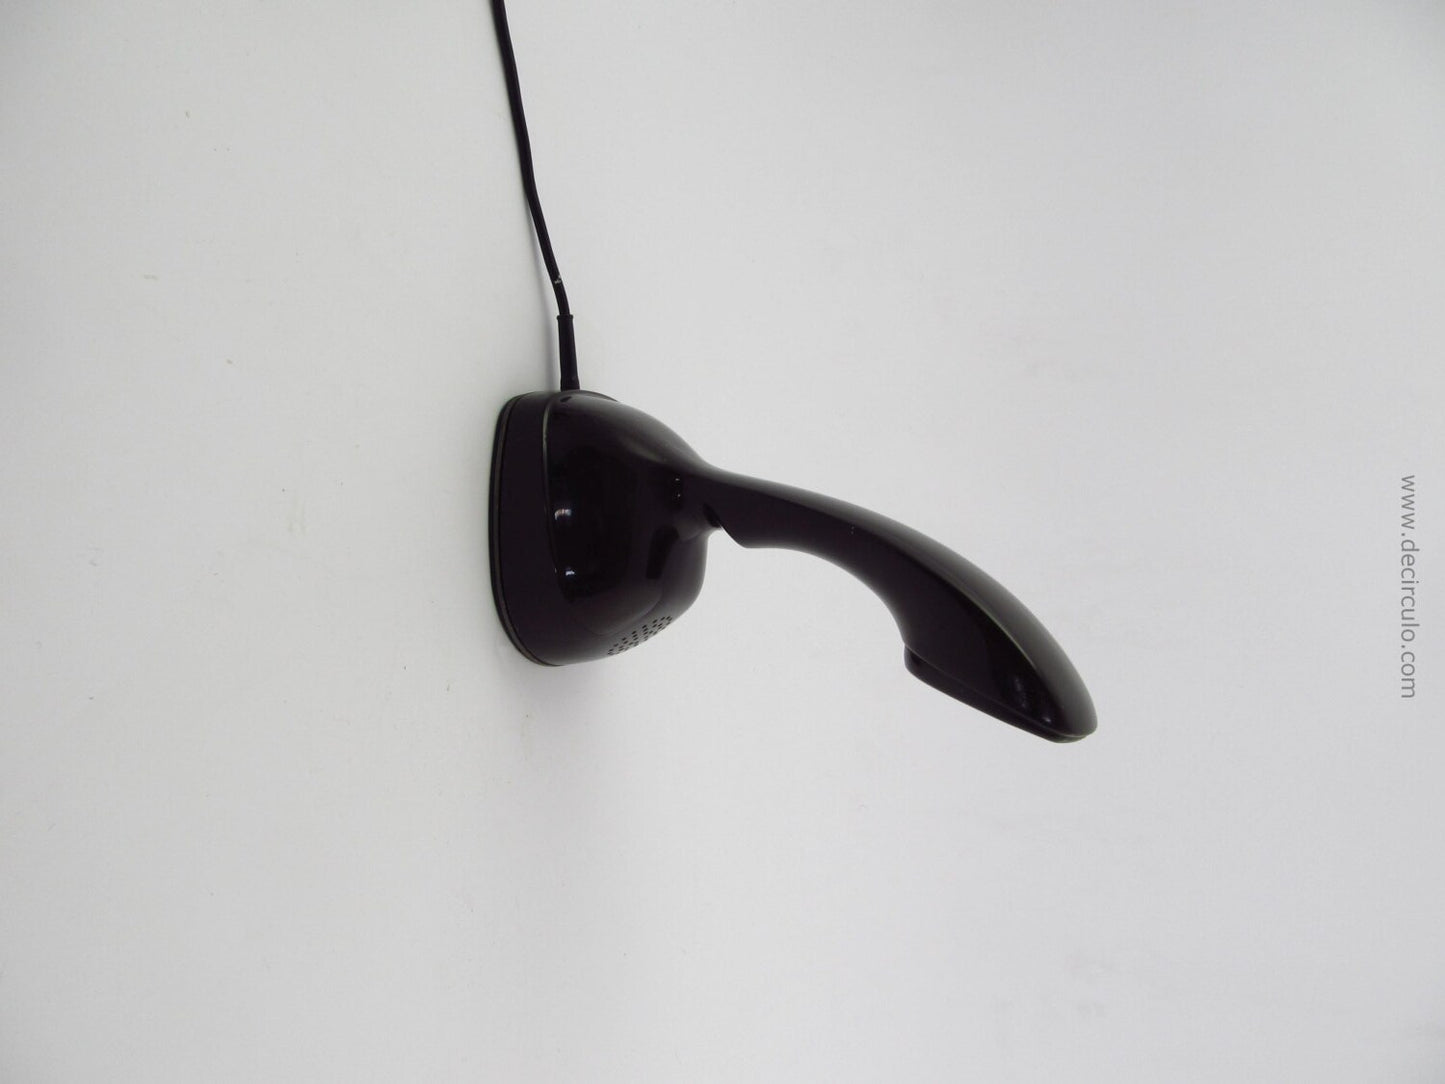 Marrón muy oscuro Ericofon famoso teléfono moderno de mediados de siglo de ericsson